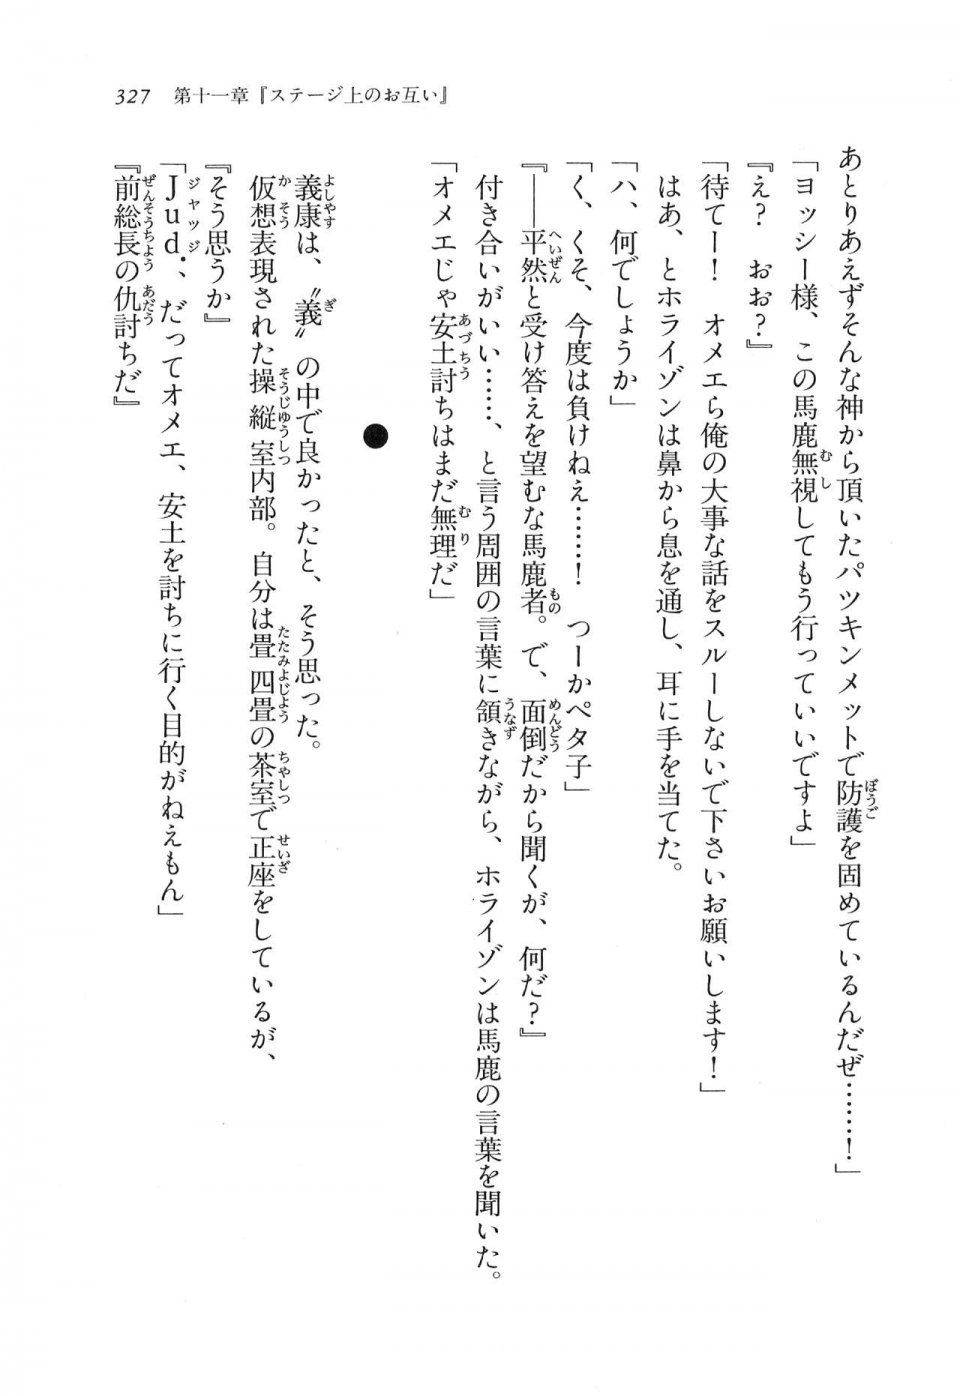 Kyoukai Senjou no Horizon LN Vol 11(5A) - Photo #327